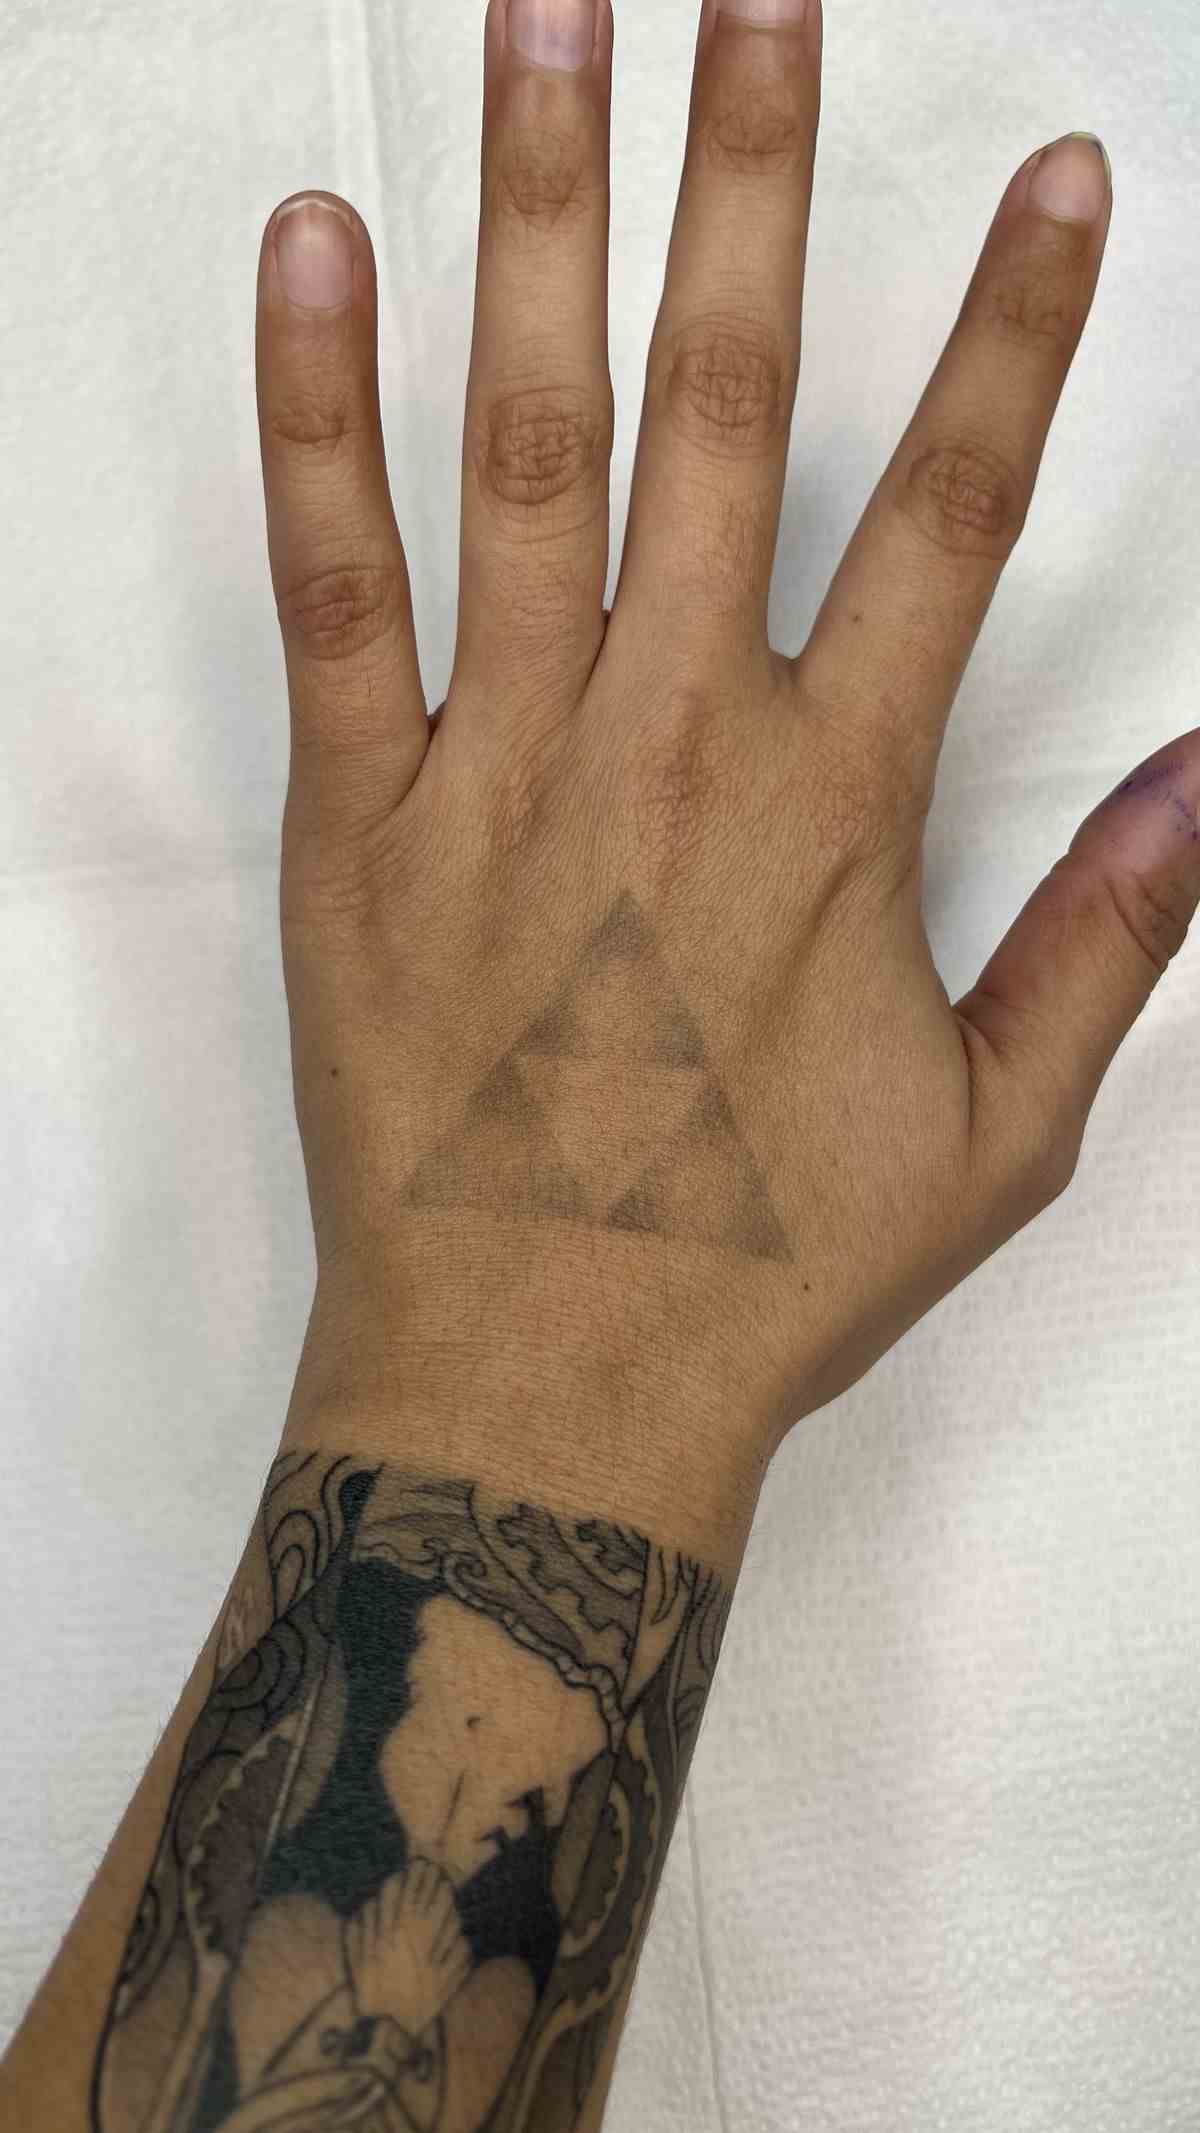 Un léger tatouage Triforce sur la main d'une personne